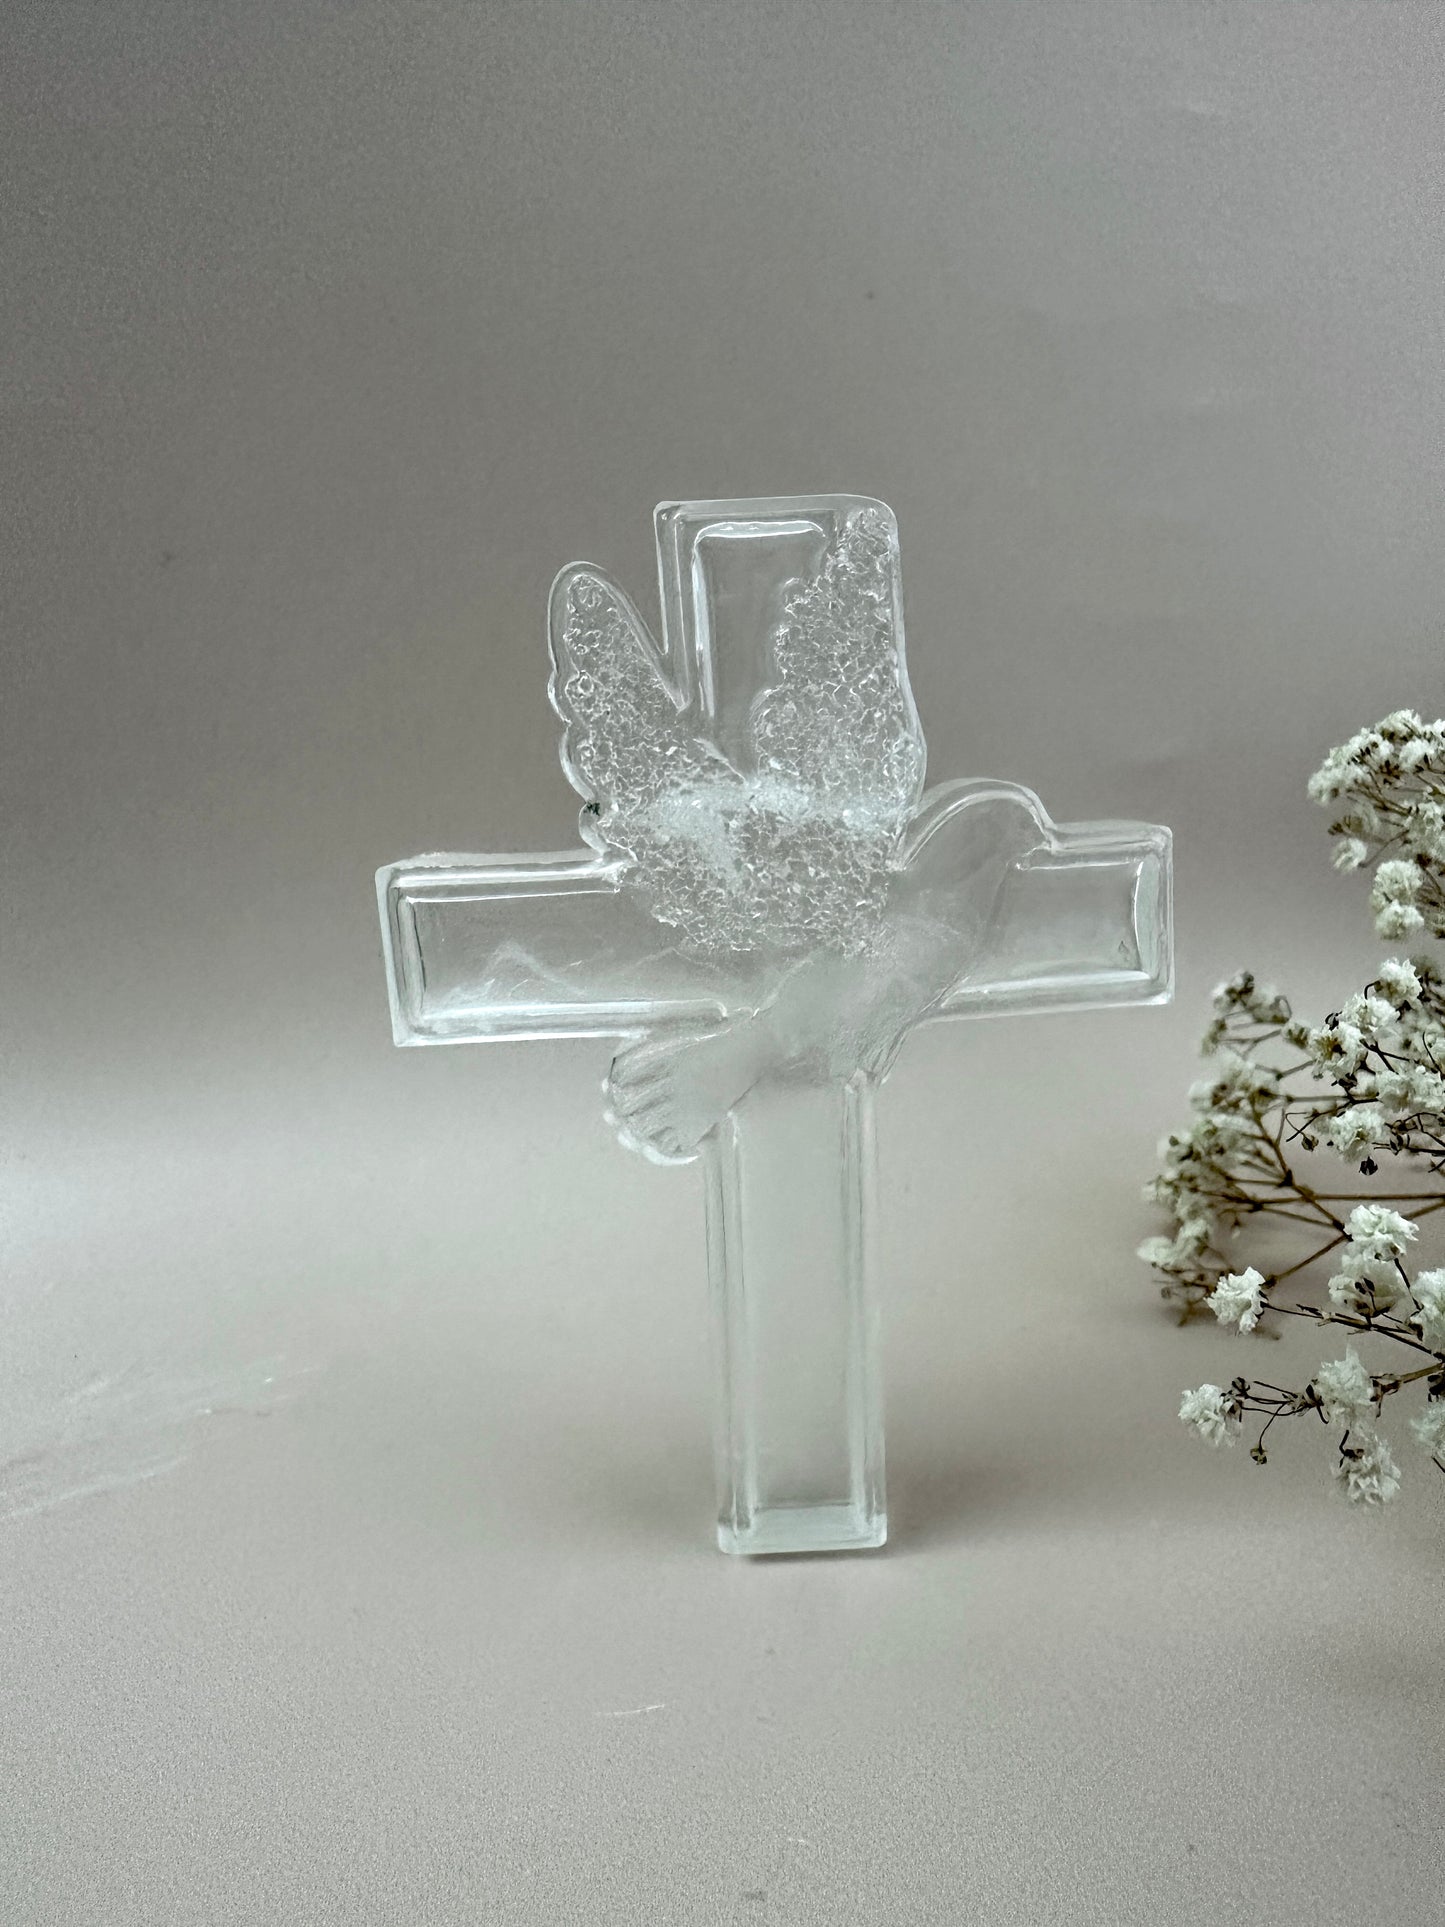 Silikonform mit Kreuzfigur und Taubenkristallen – einzigartiges religiöses Bastelwerkzeug – perfekt für DIY-Projekte – ideales christliches Geschenk